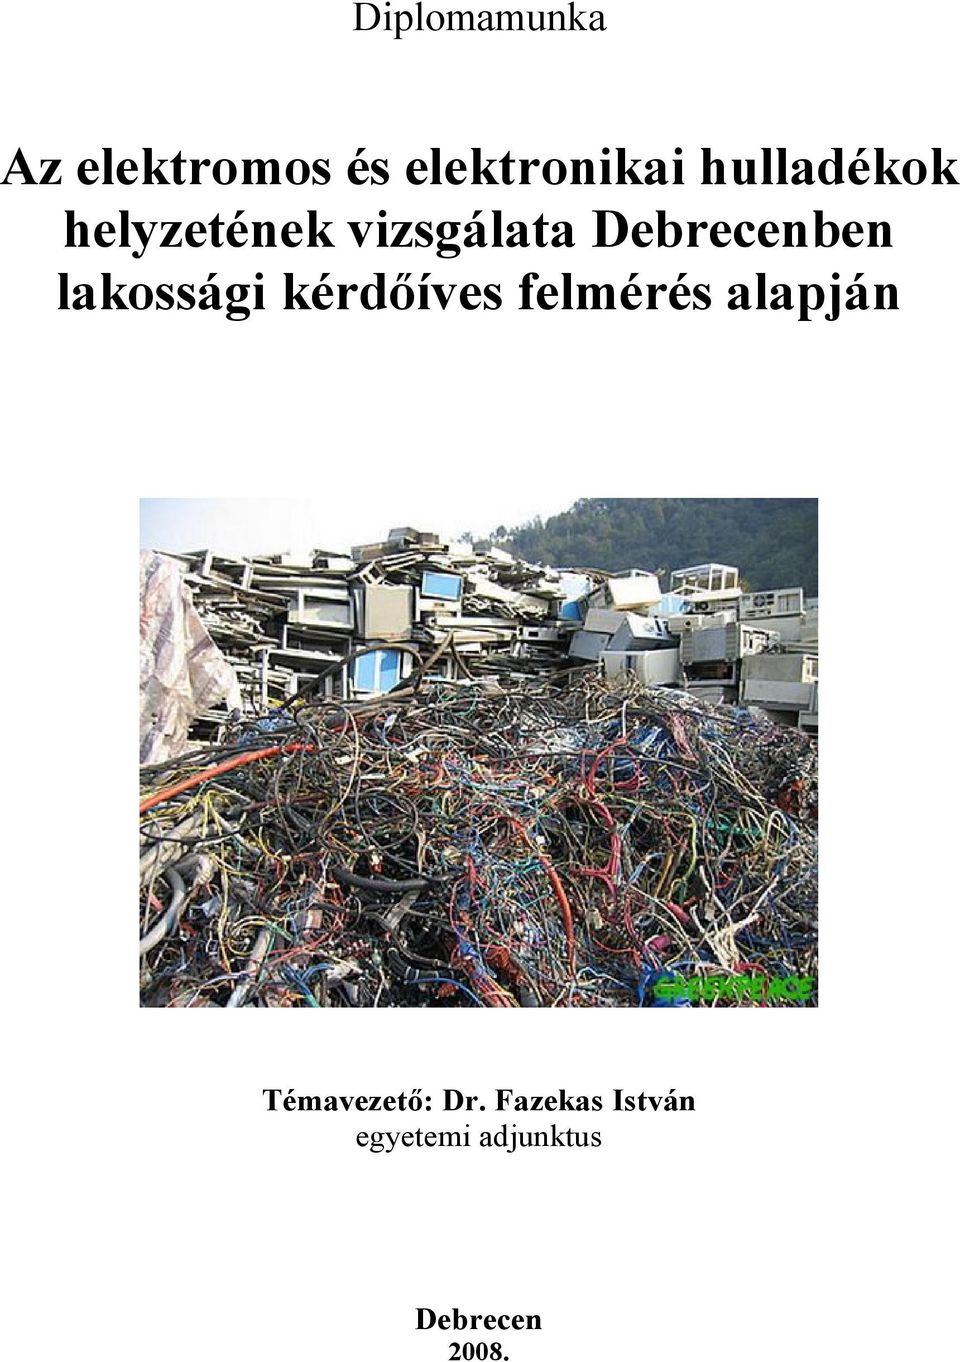 Az elektromos és elektronikai hulladékok helyzetének vizsgálata Debrecenben  lakossági kérdőíves felmérés alapján - PDF Ingyenes letöltés